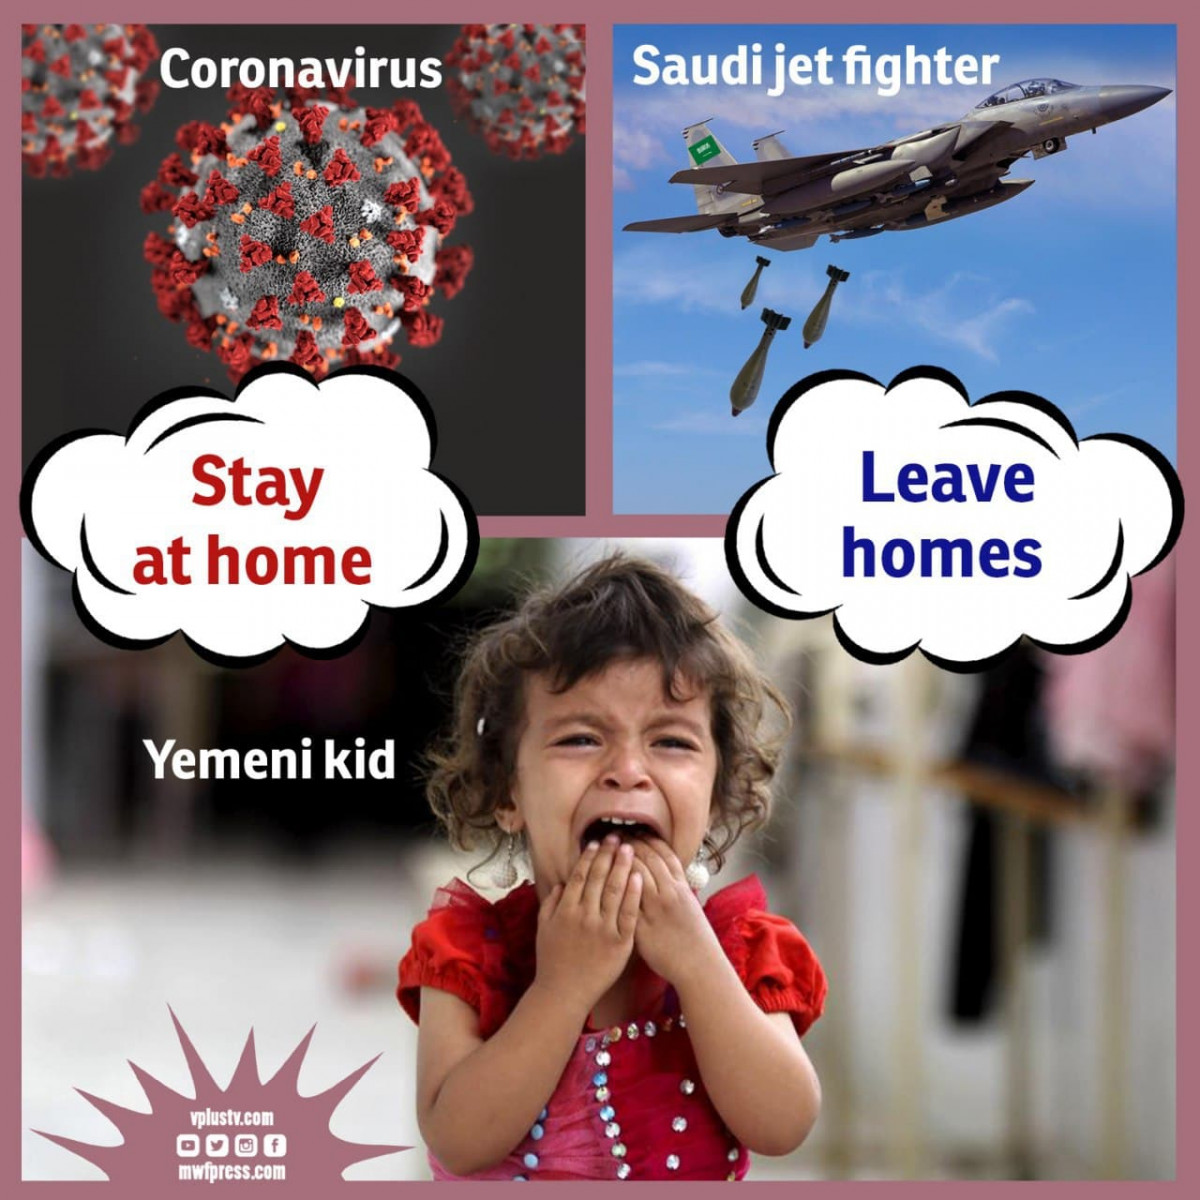 Yemen, Saudi jet fighter and Coronavirus